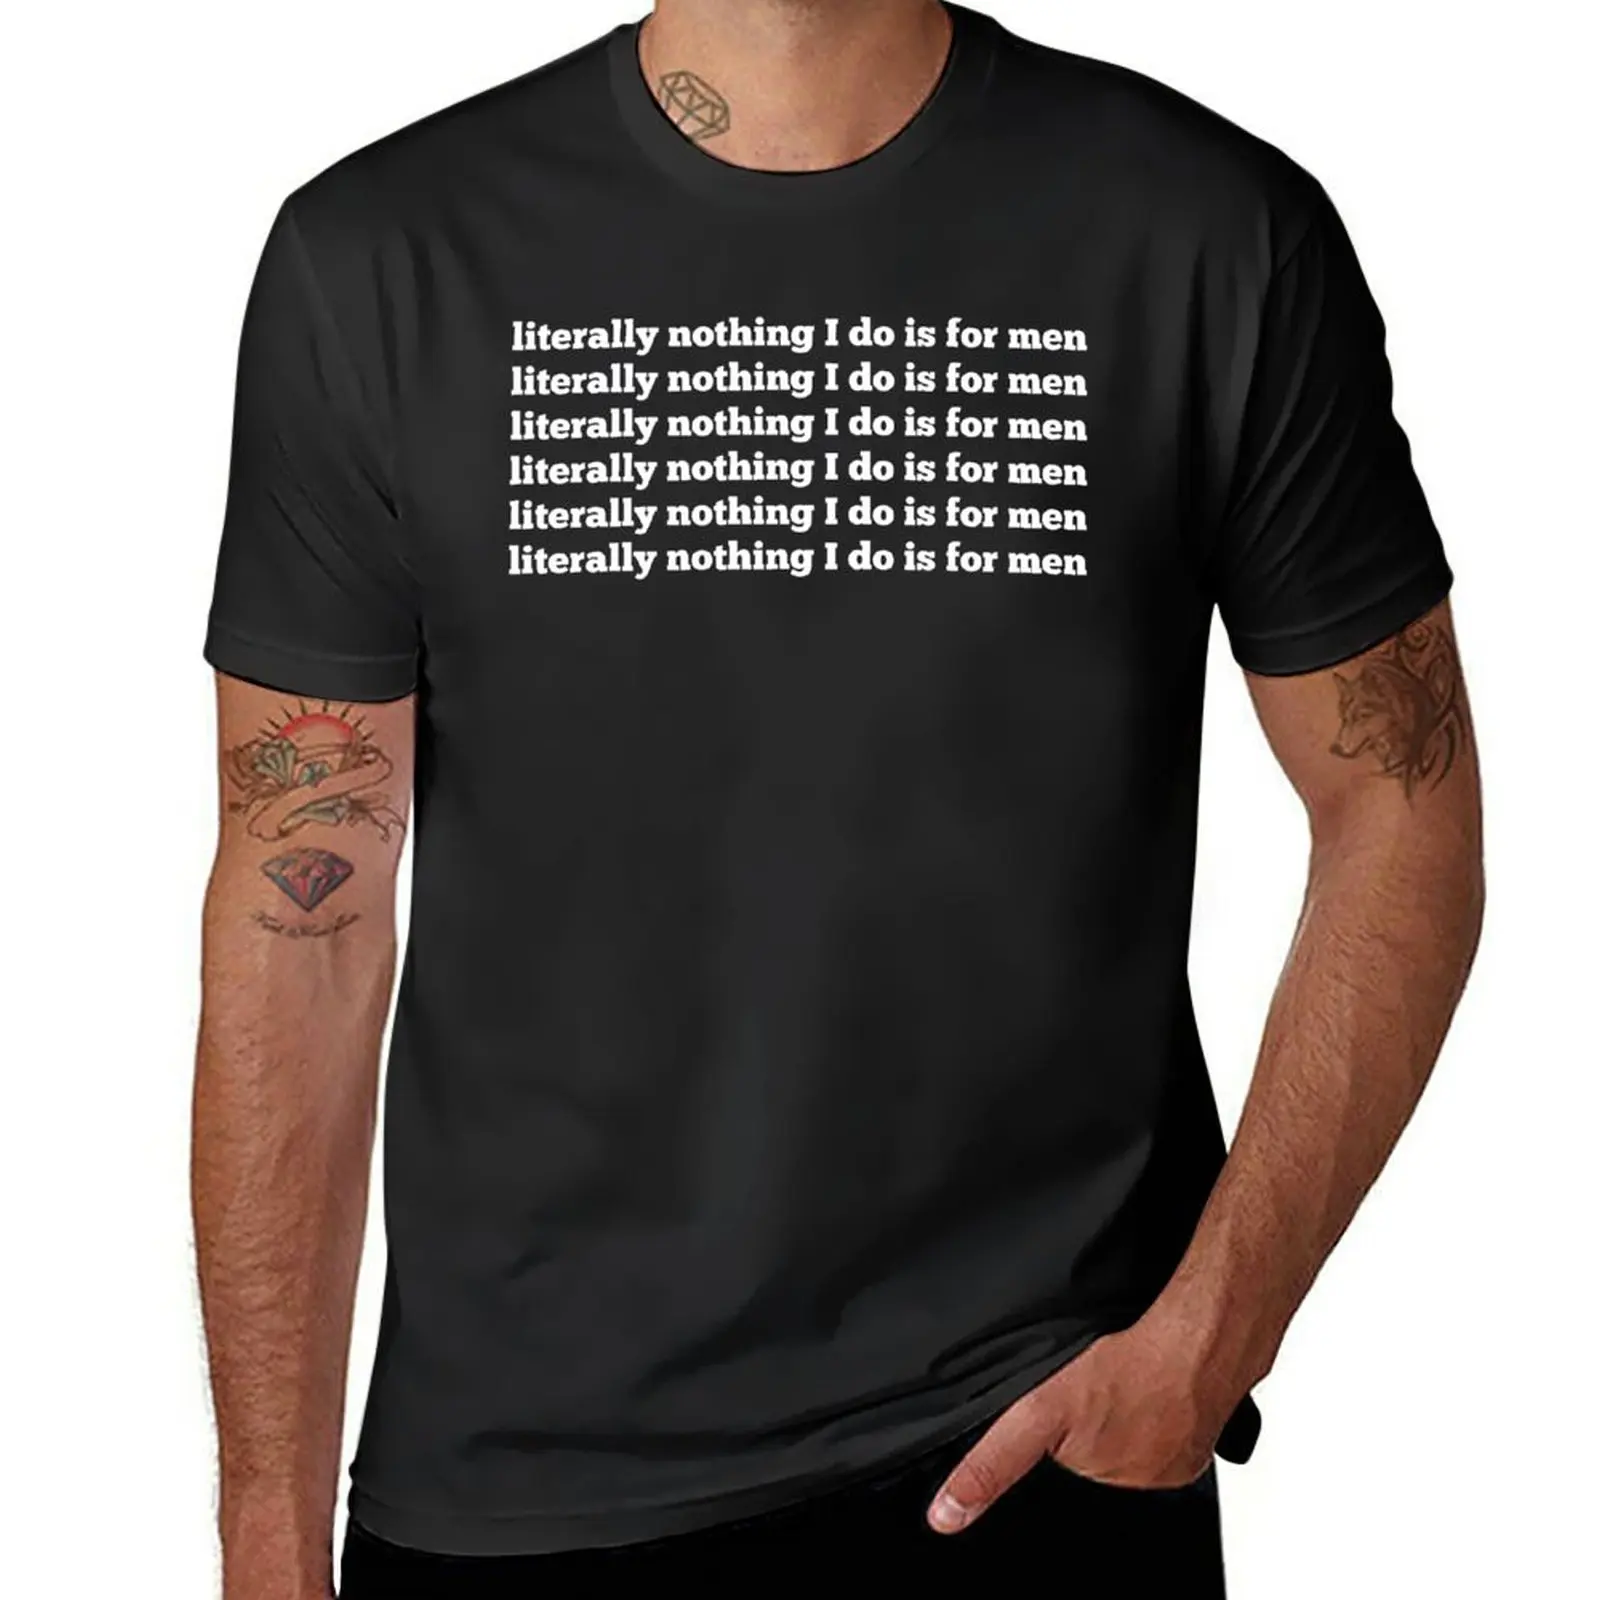 Футболка Nothing I do is for men, обычная футболка, черная футболка, футболки с графическим рисунком, спортивная рубашка, футболки для мужчин с тяжелым весом Изображение 0